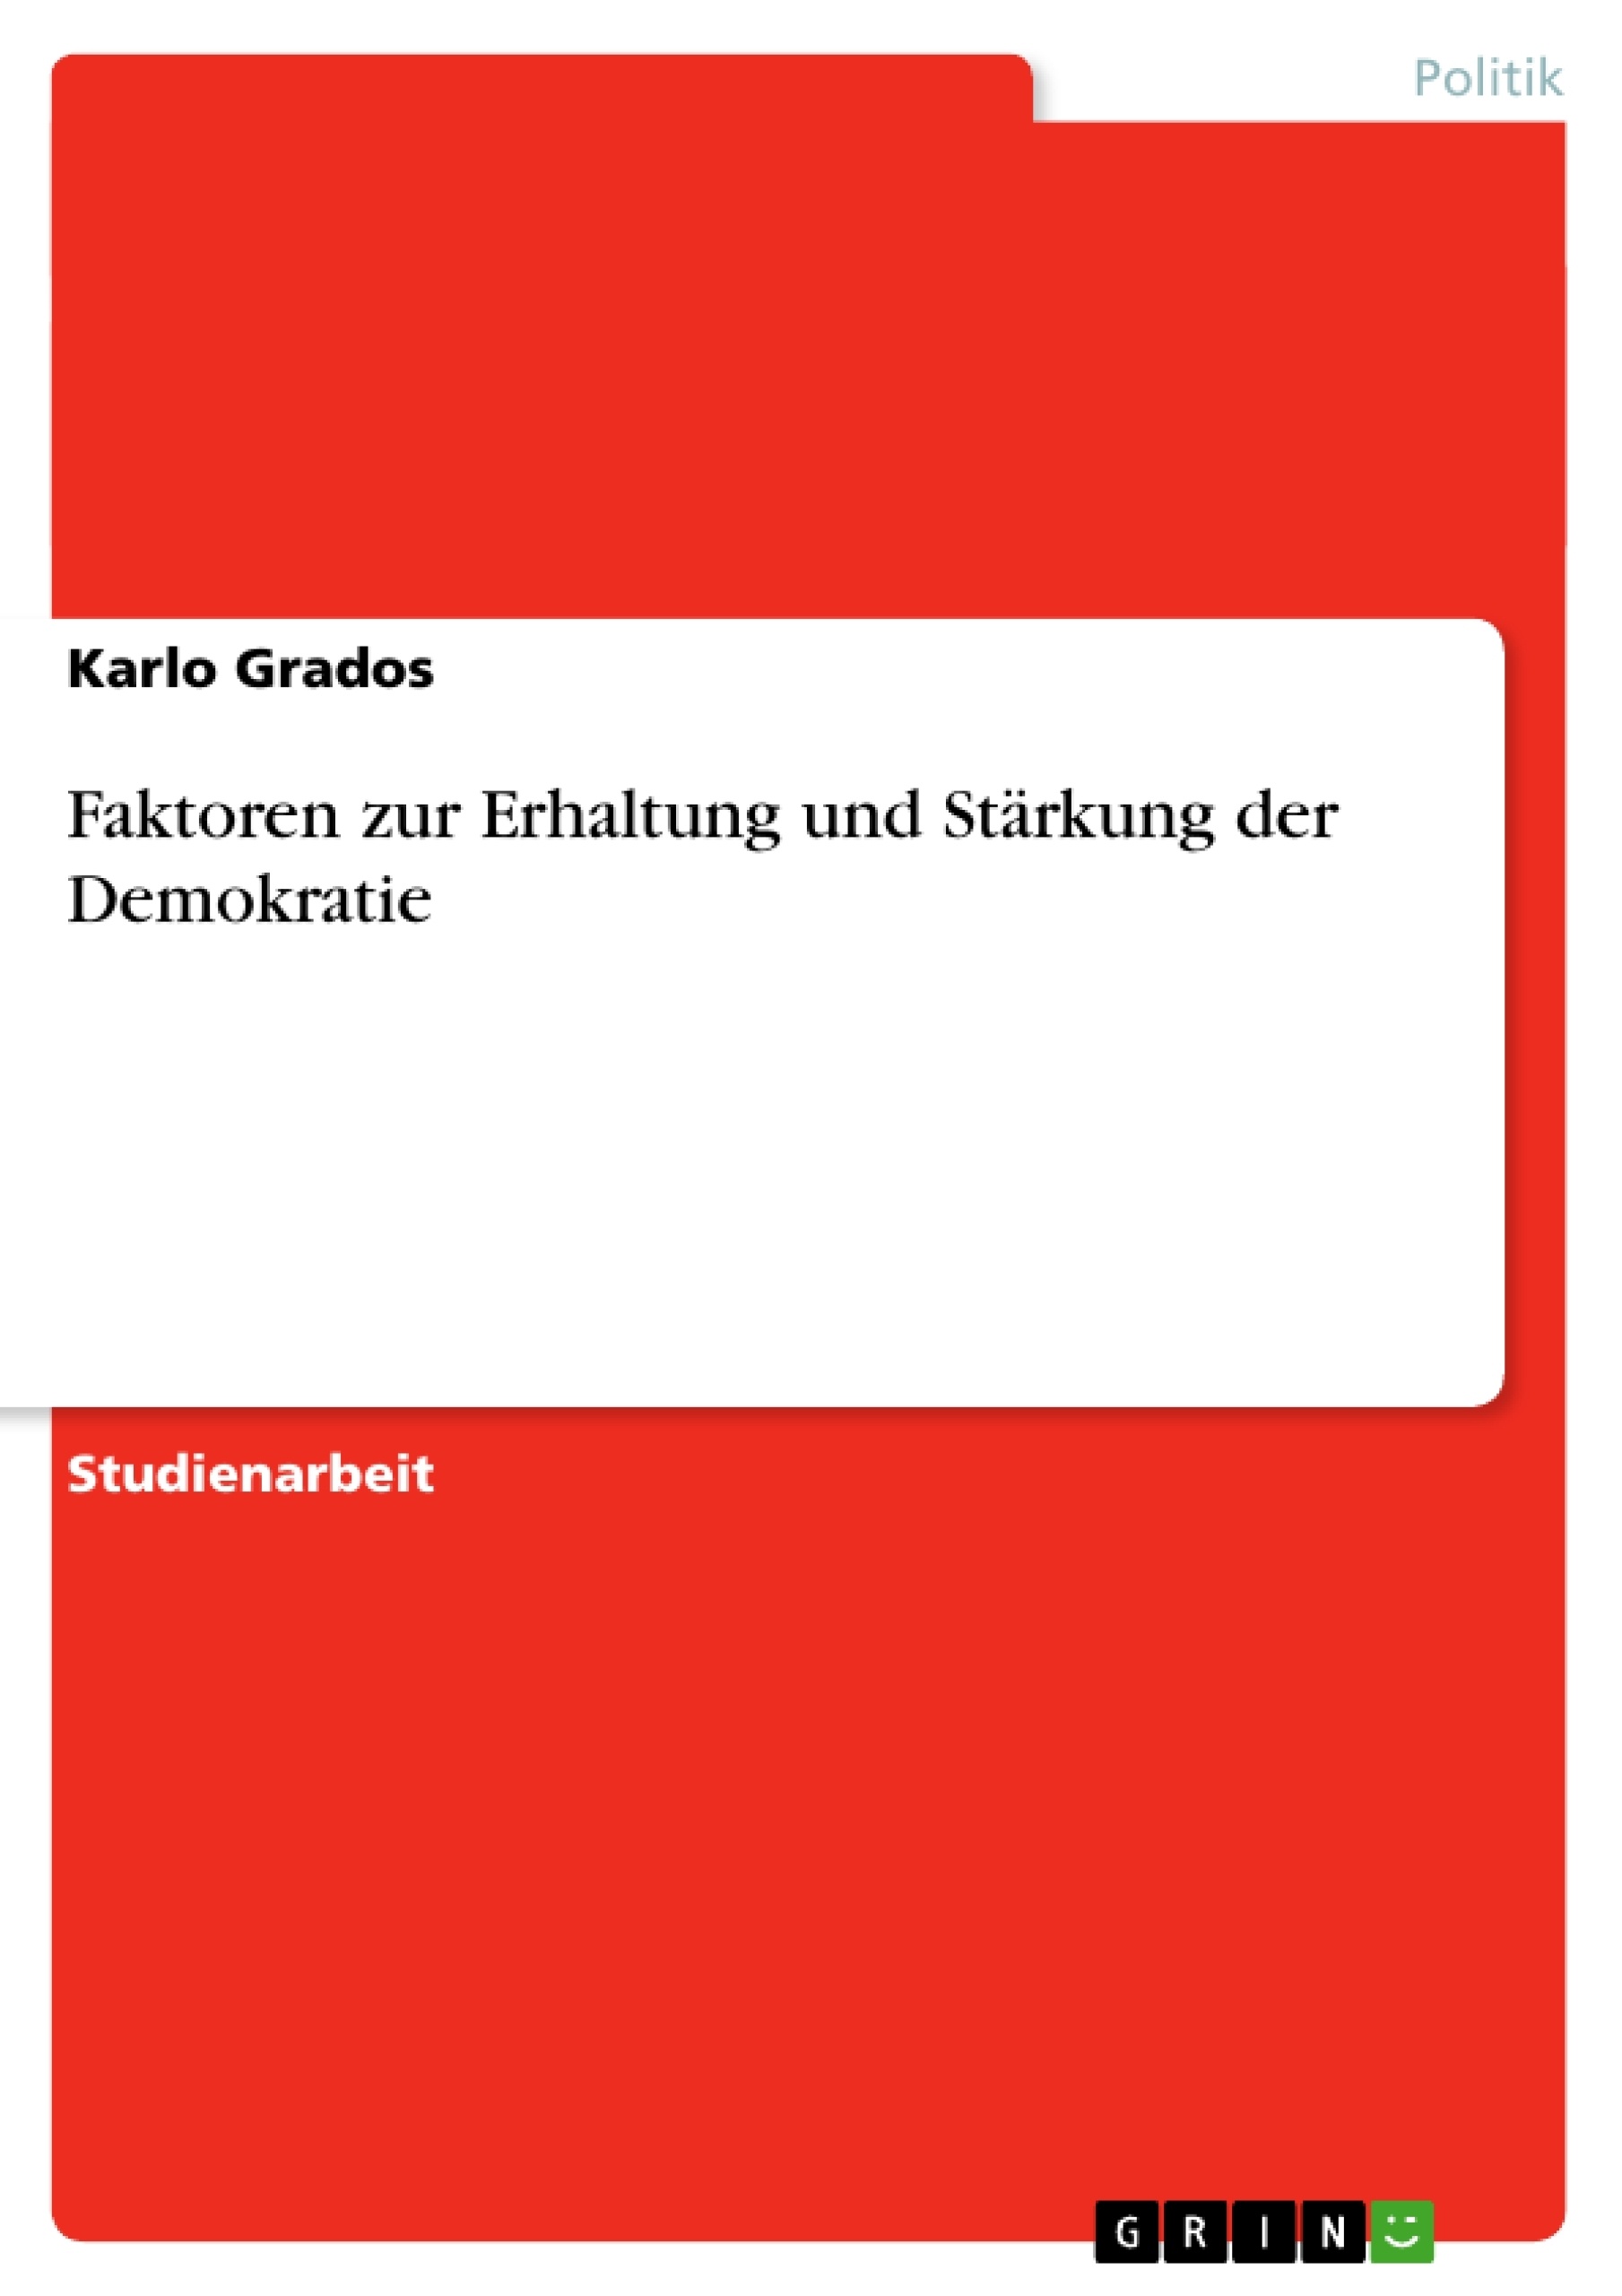 Title: Faktoren zur Erhaltung und Stärkung der Demokratie